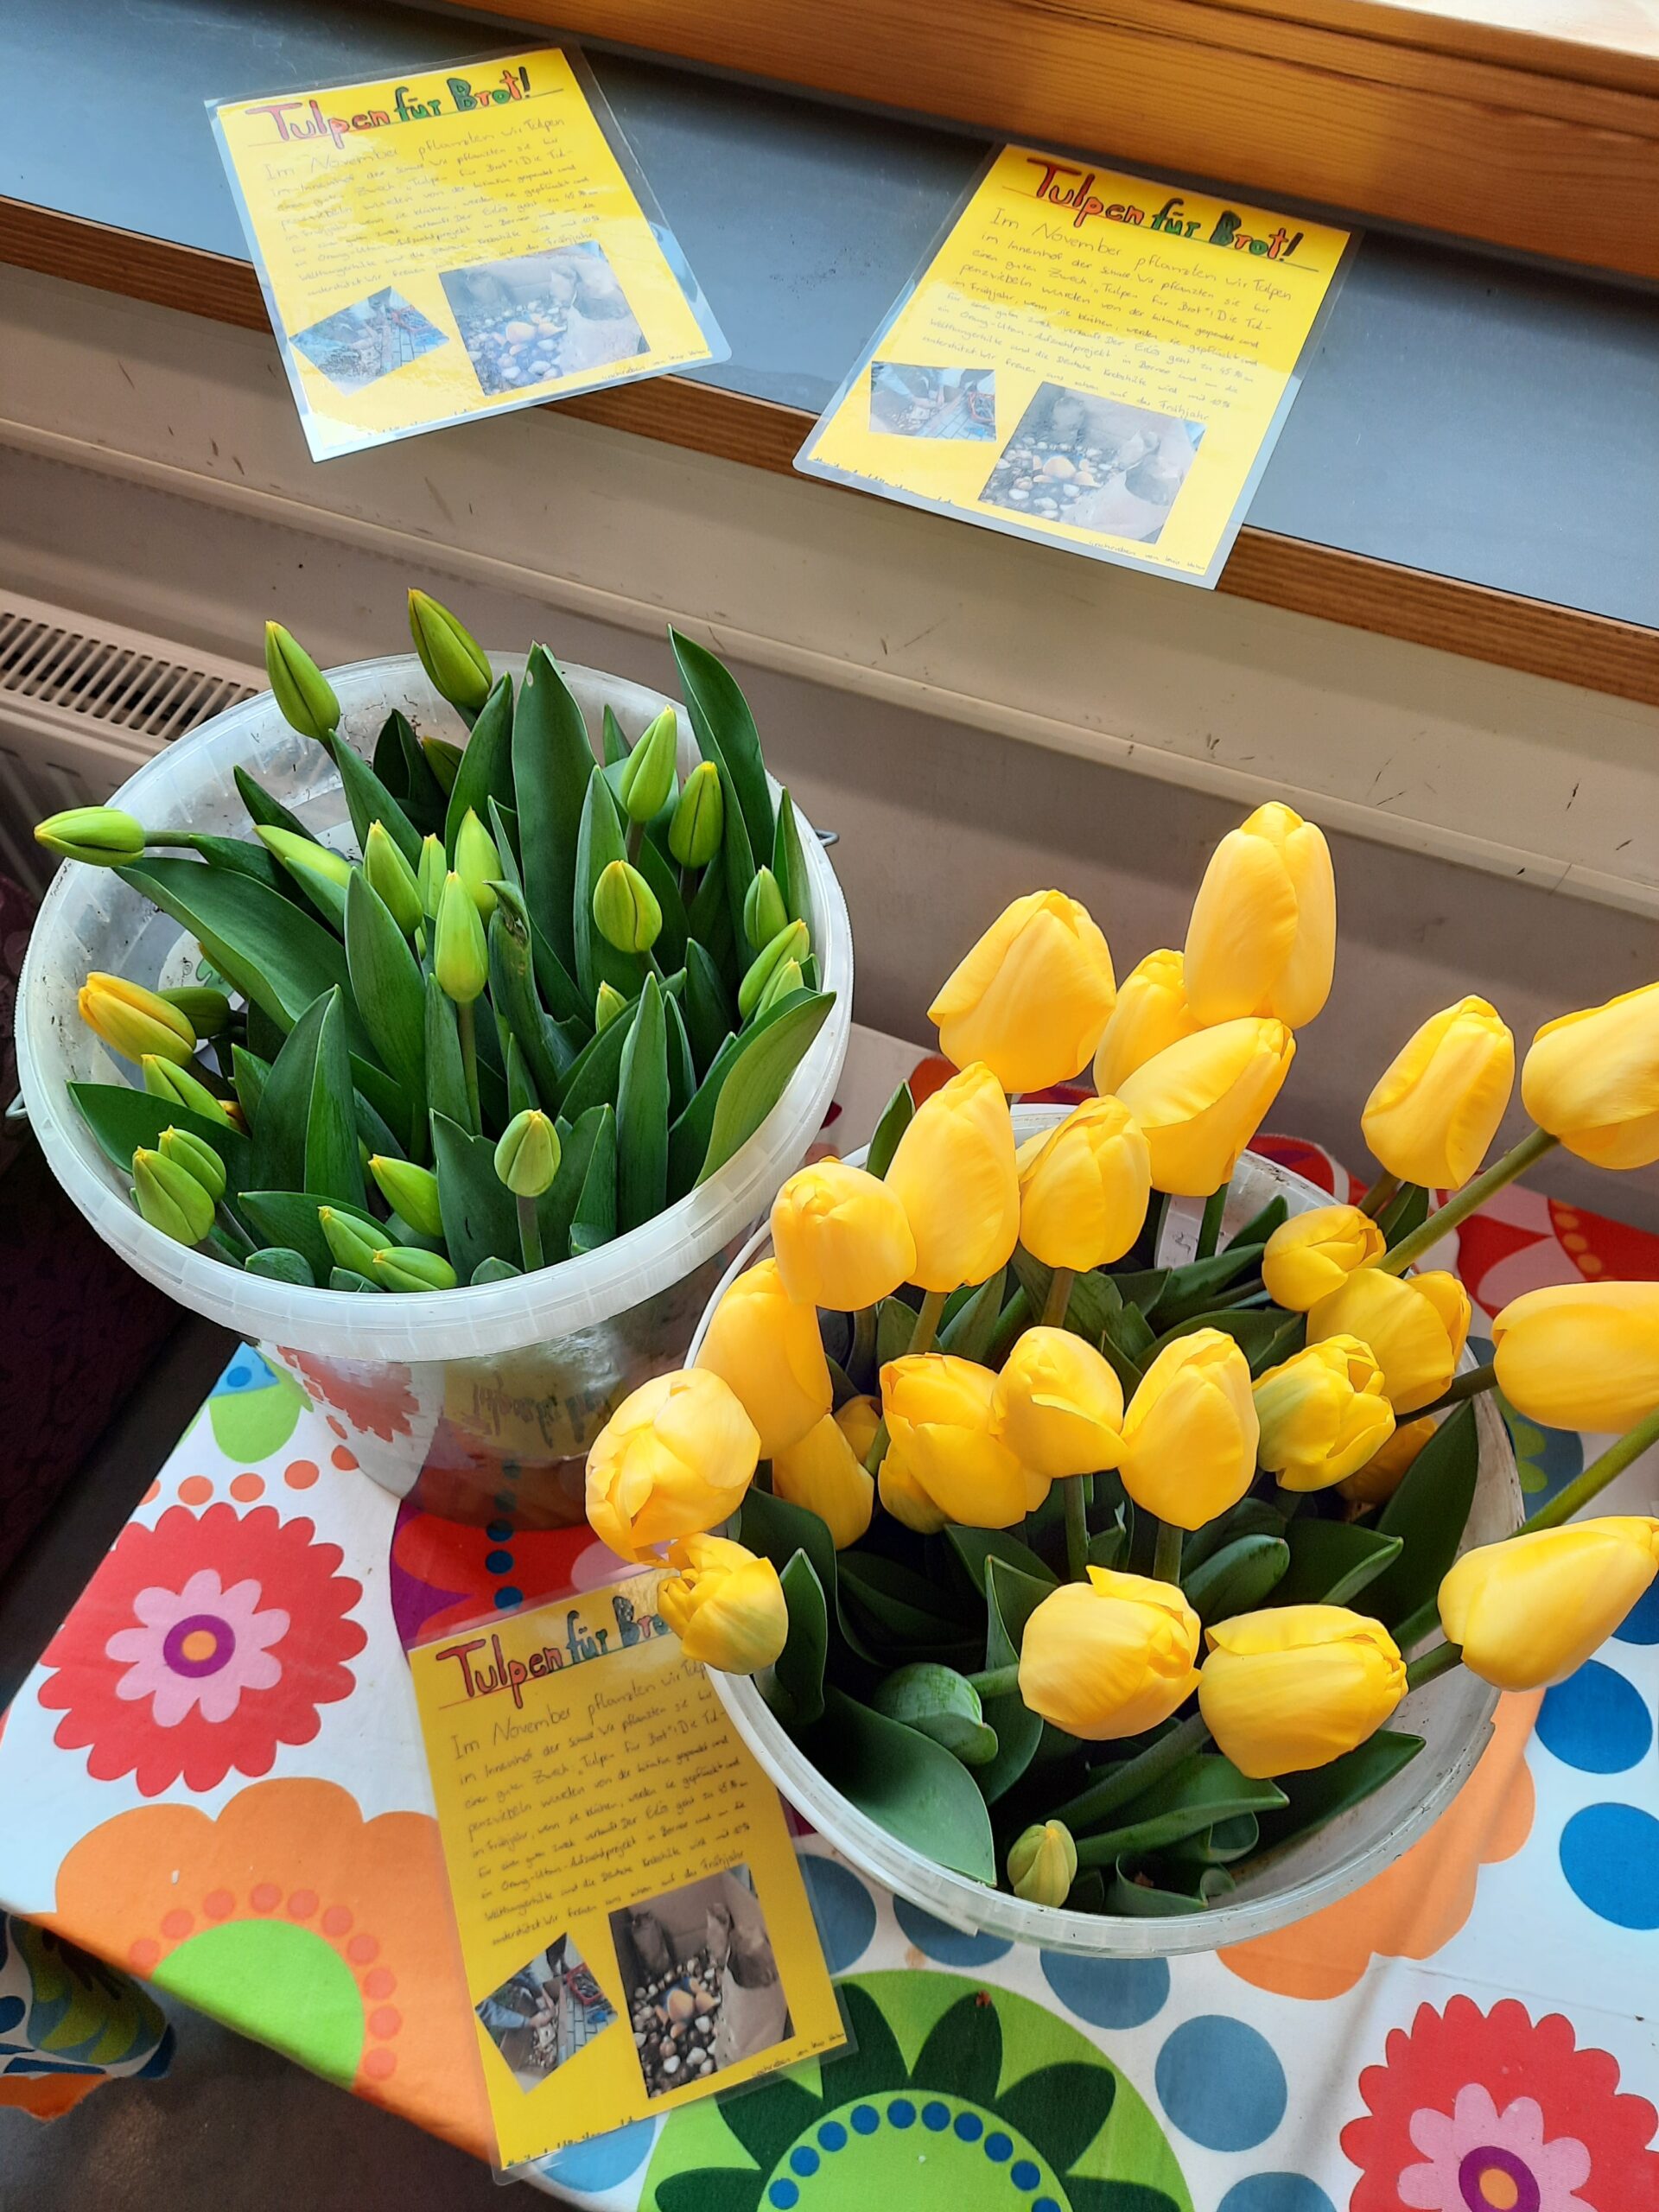 Tulpen für Brot – Erfolgreiche Spendenaktion